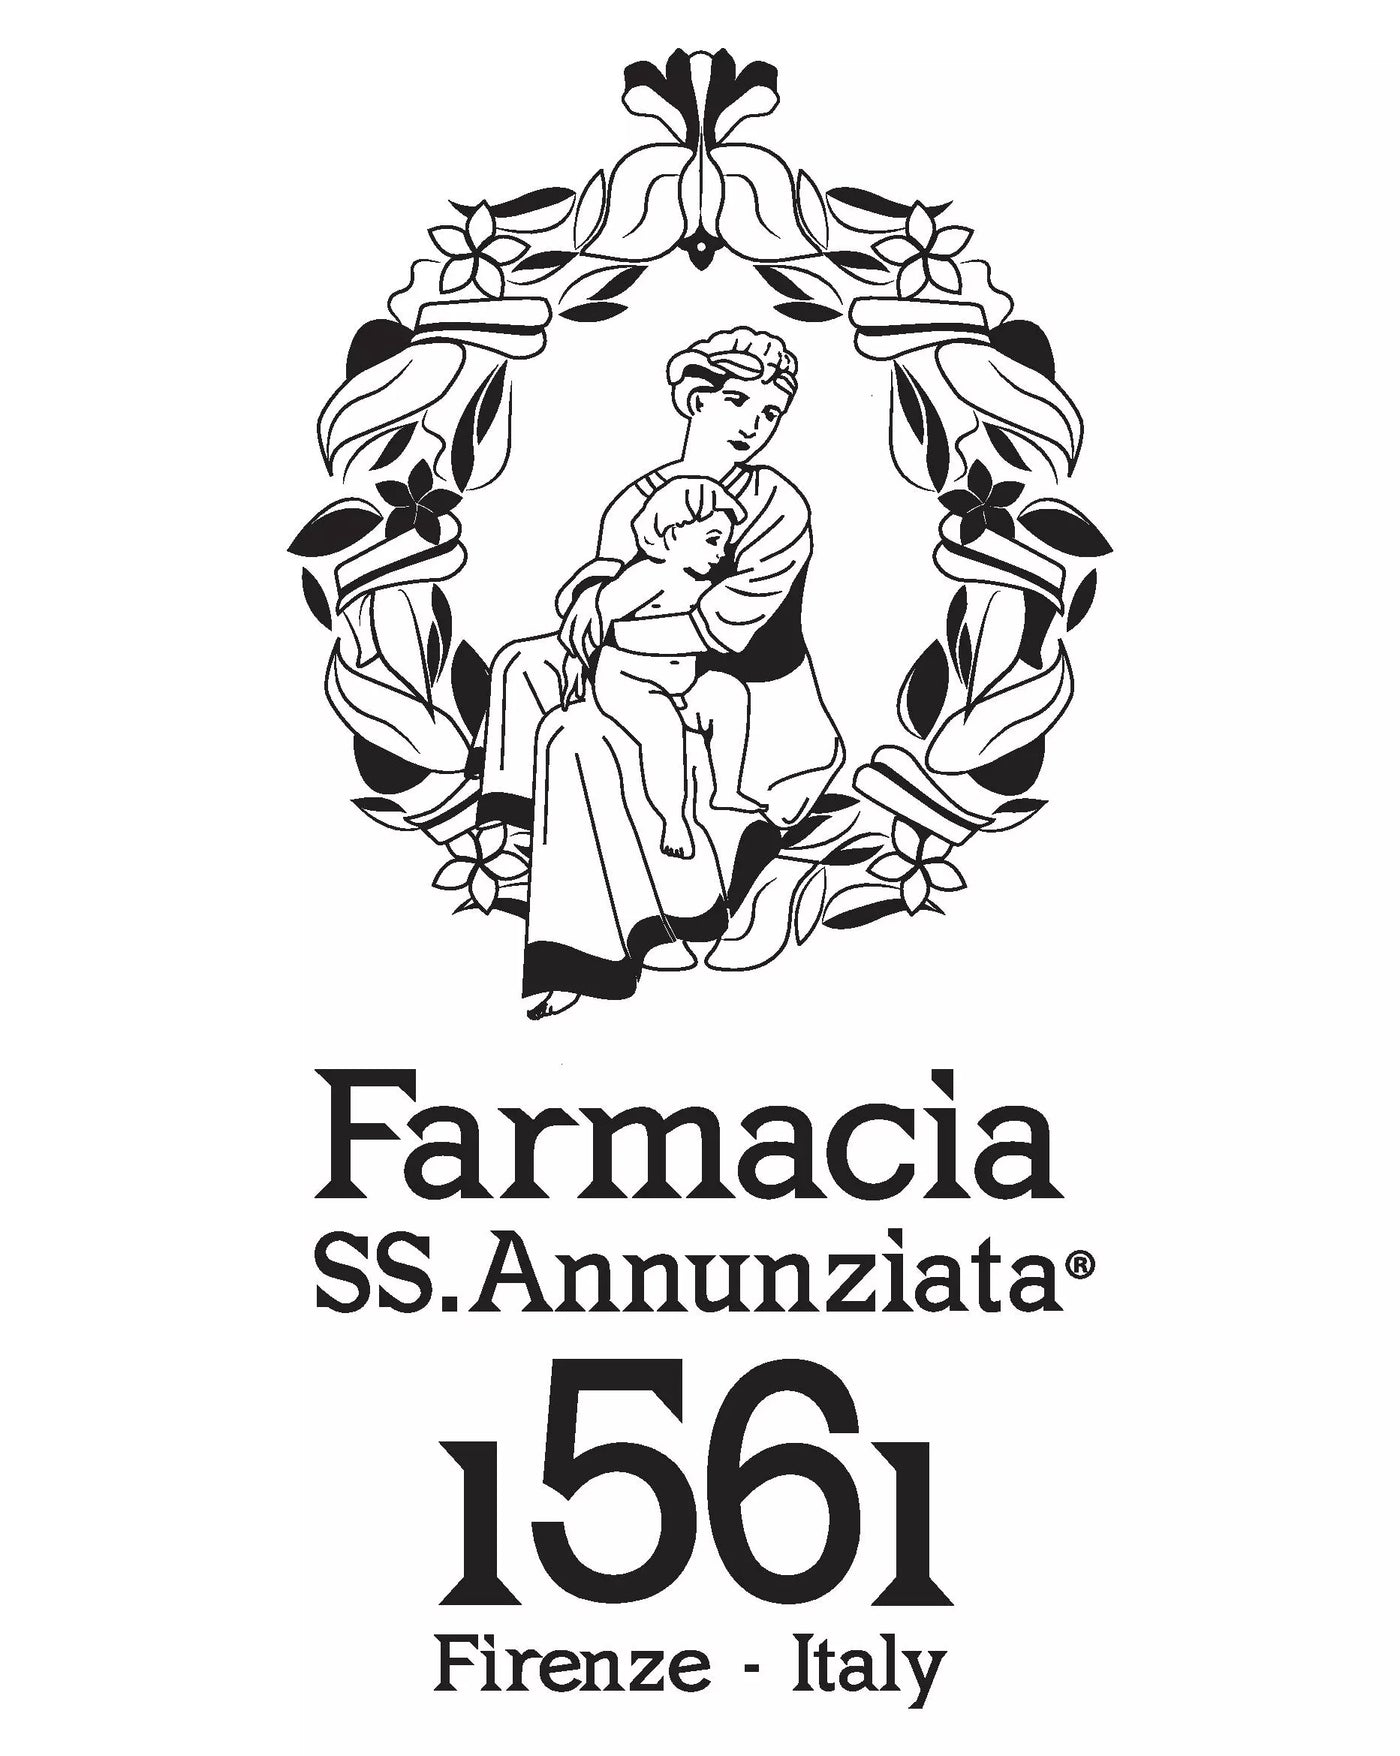 Farmacia SS Annunziata 1561